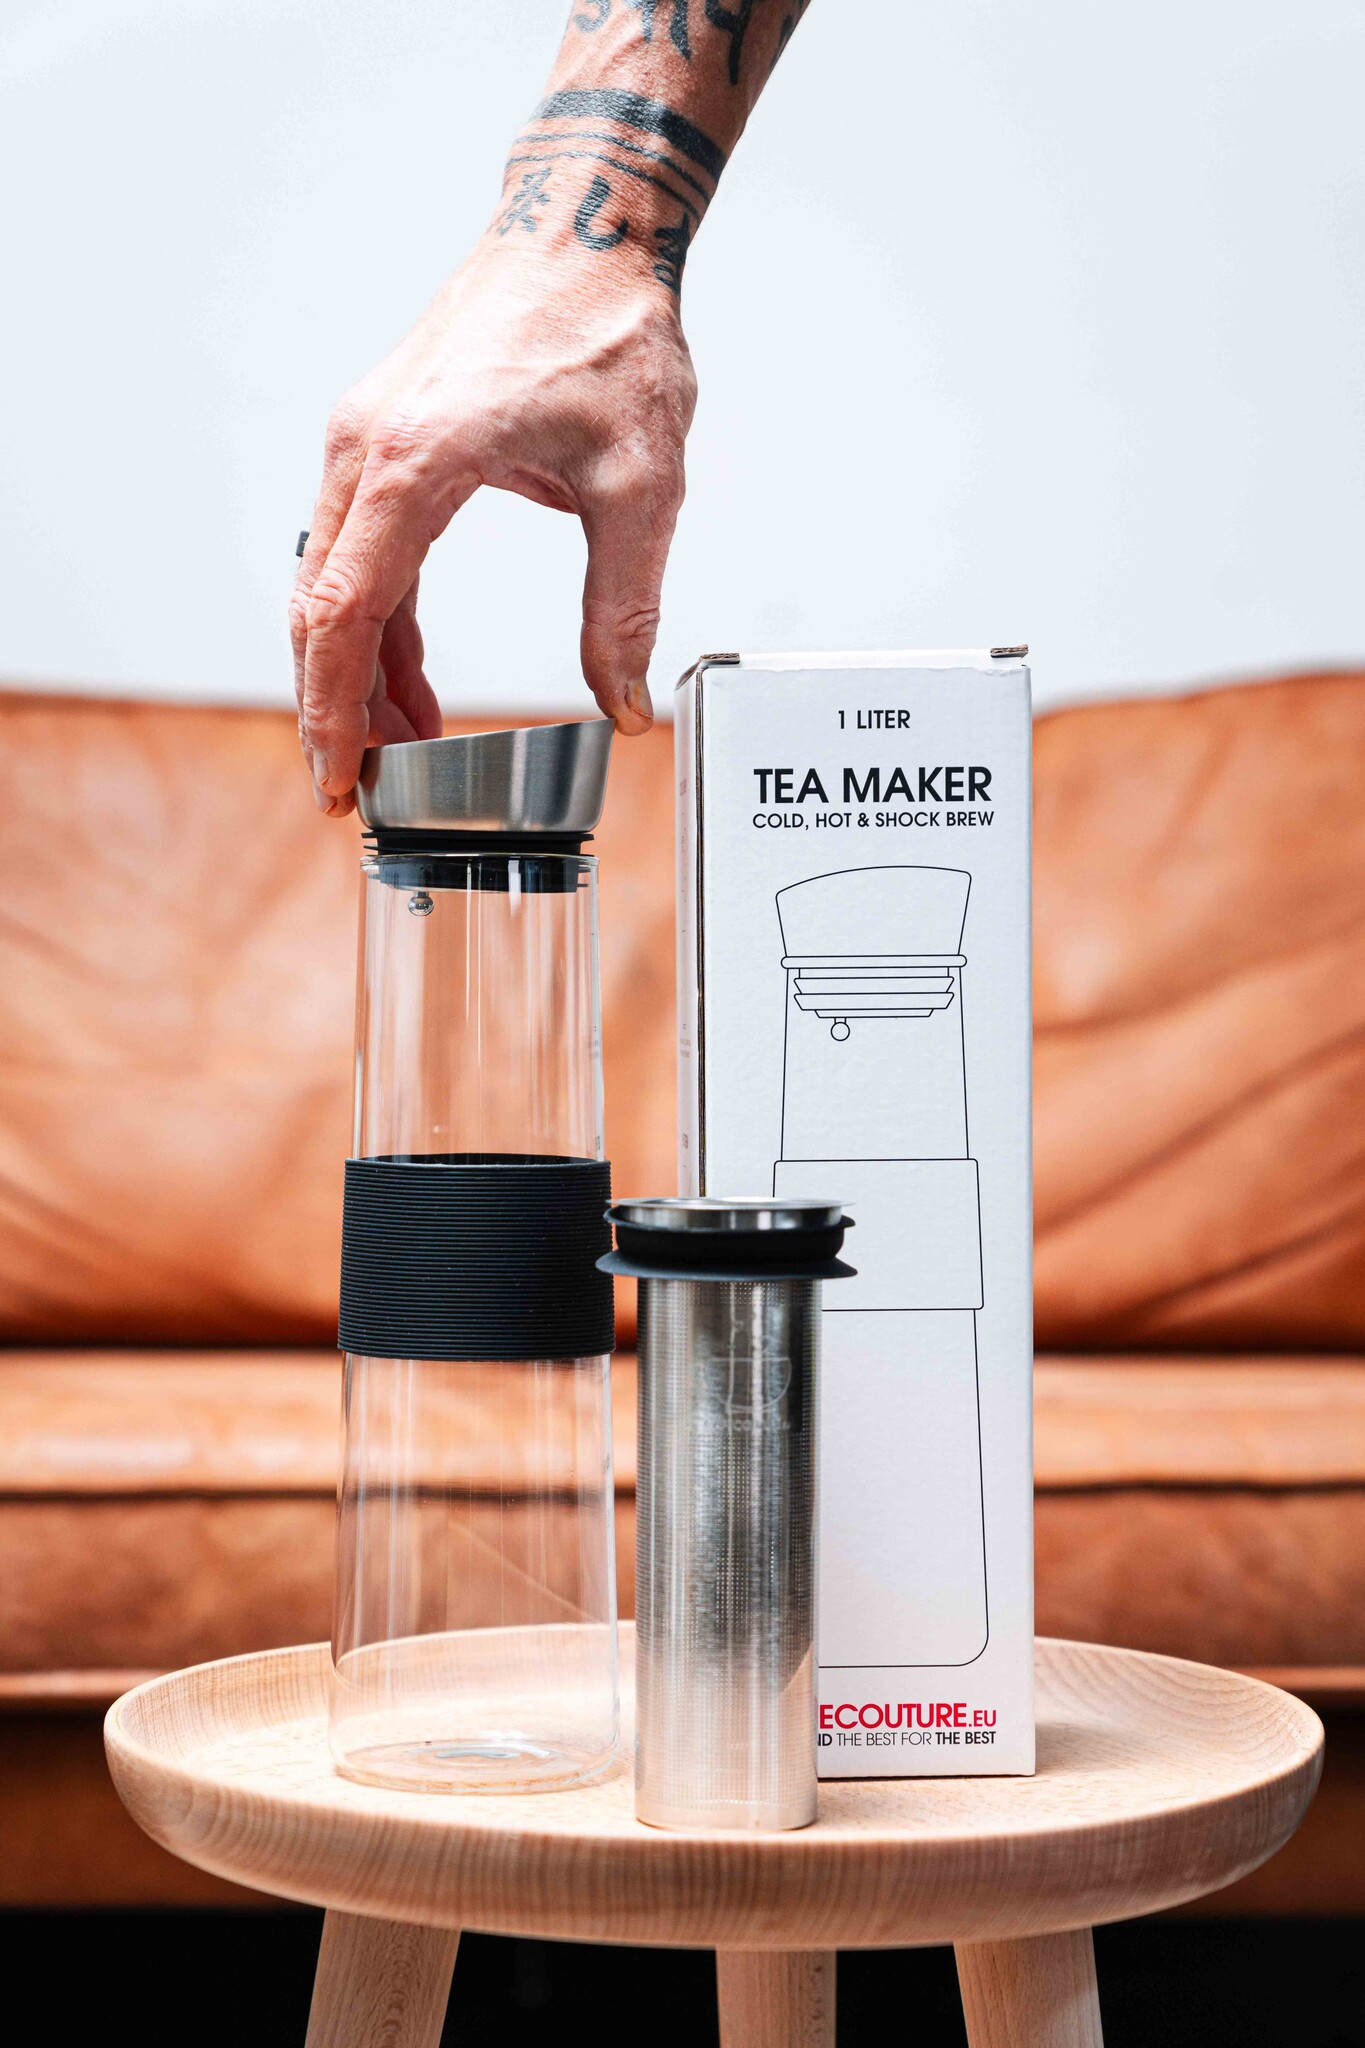 Complete Try out set + Tea maker (1 liter)